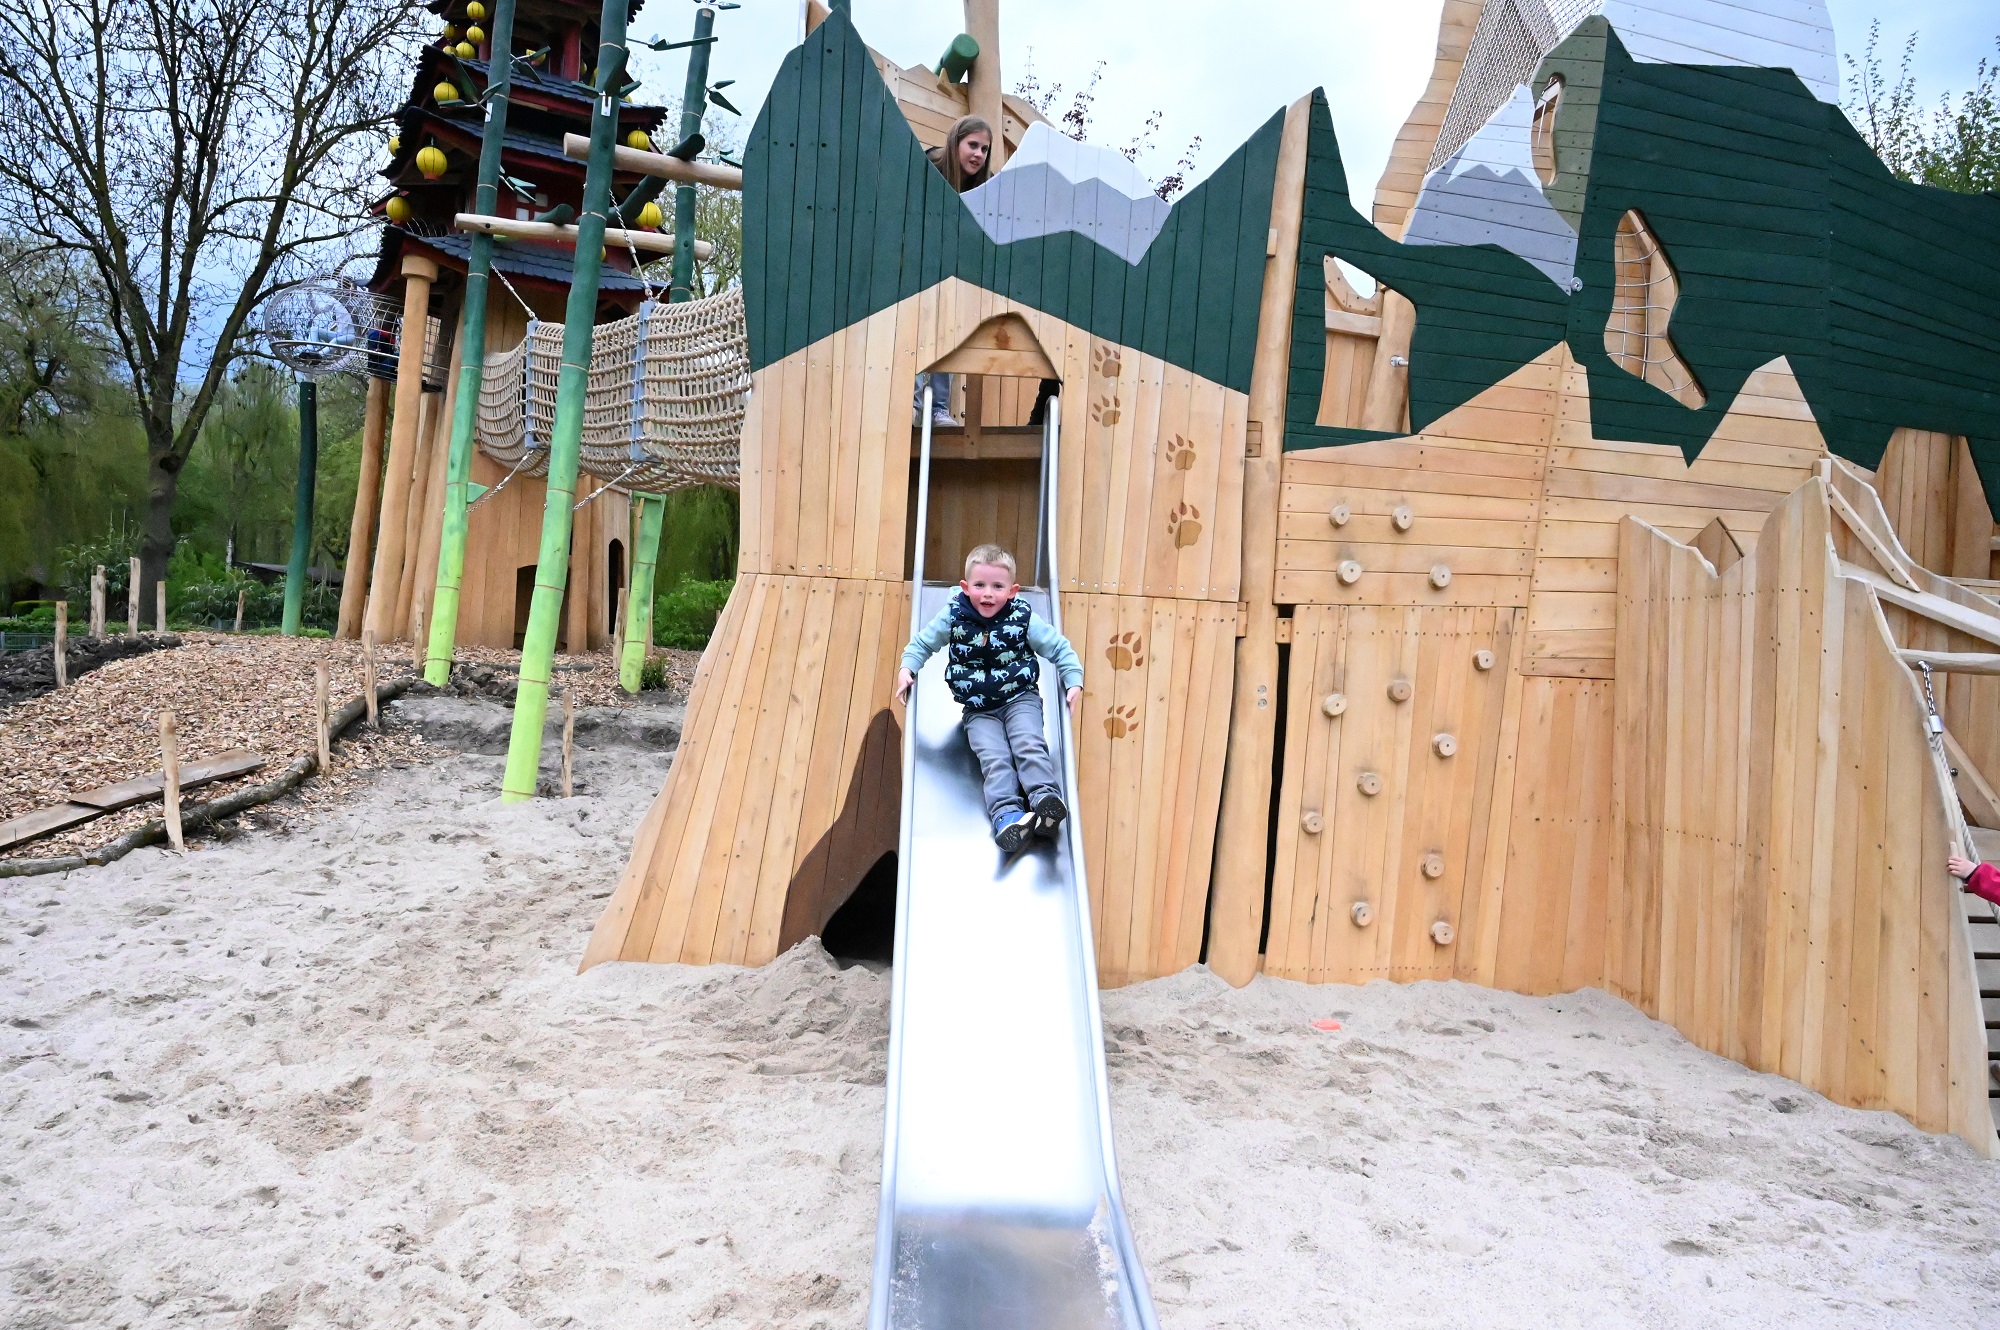 Der Playmore Fantasy-Abenteuerspielplatz im Tiergarten Kleve gilt als einer der schönsten Spielplätze am Niederrhein_Quelle Tiergarten Kleve (2)